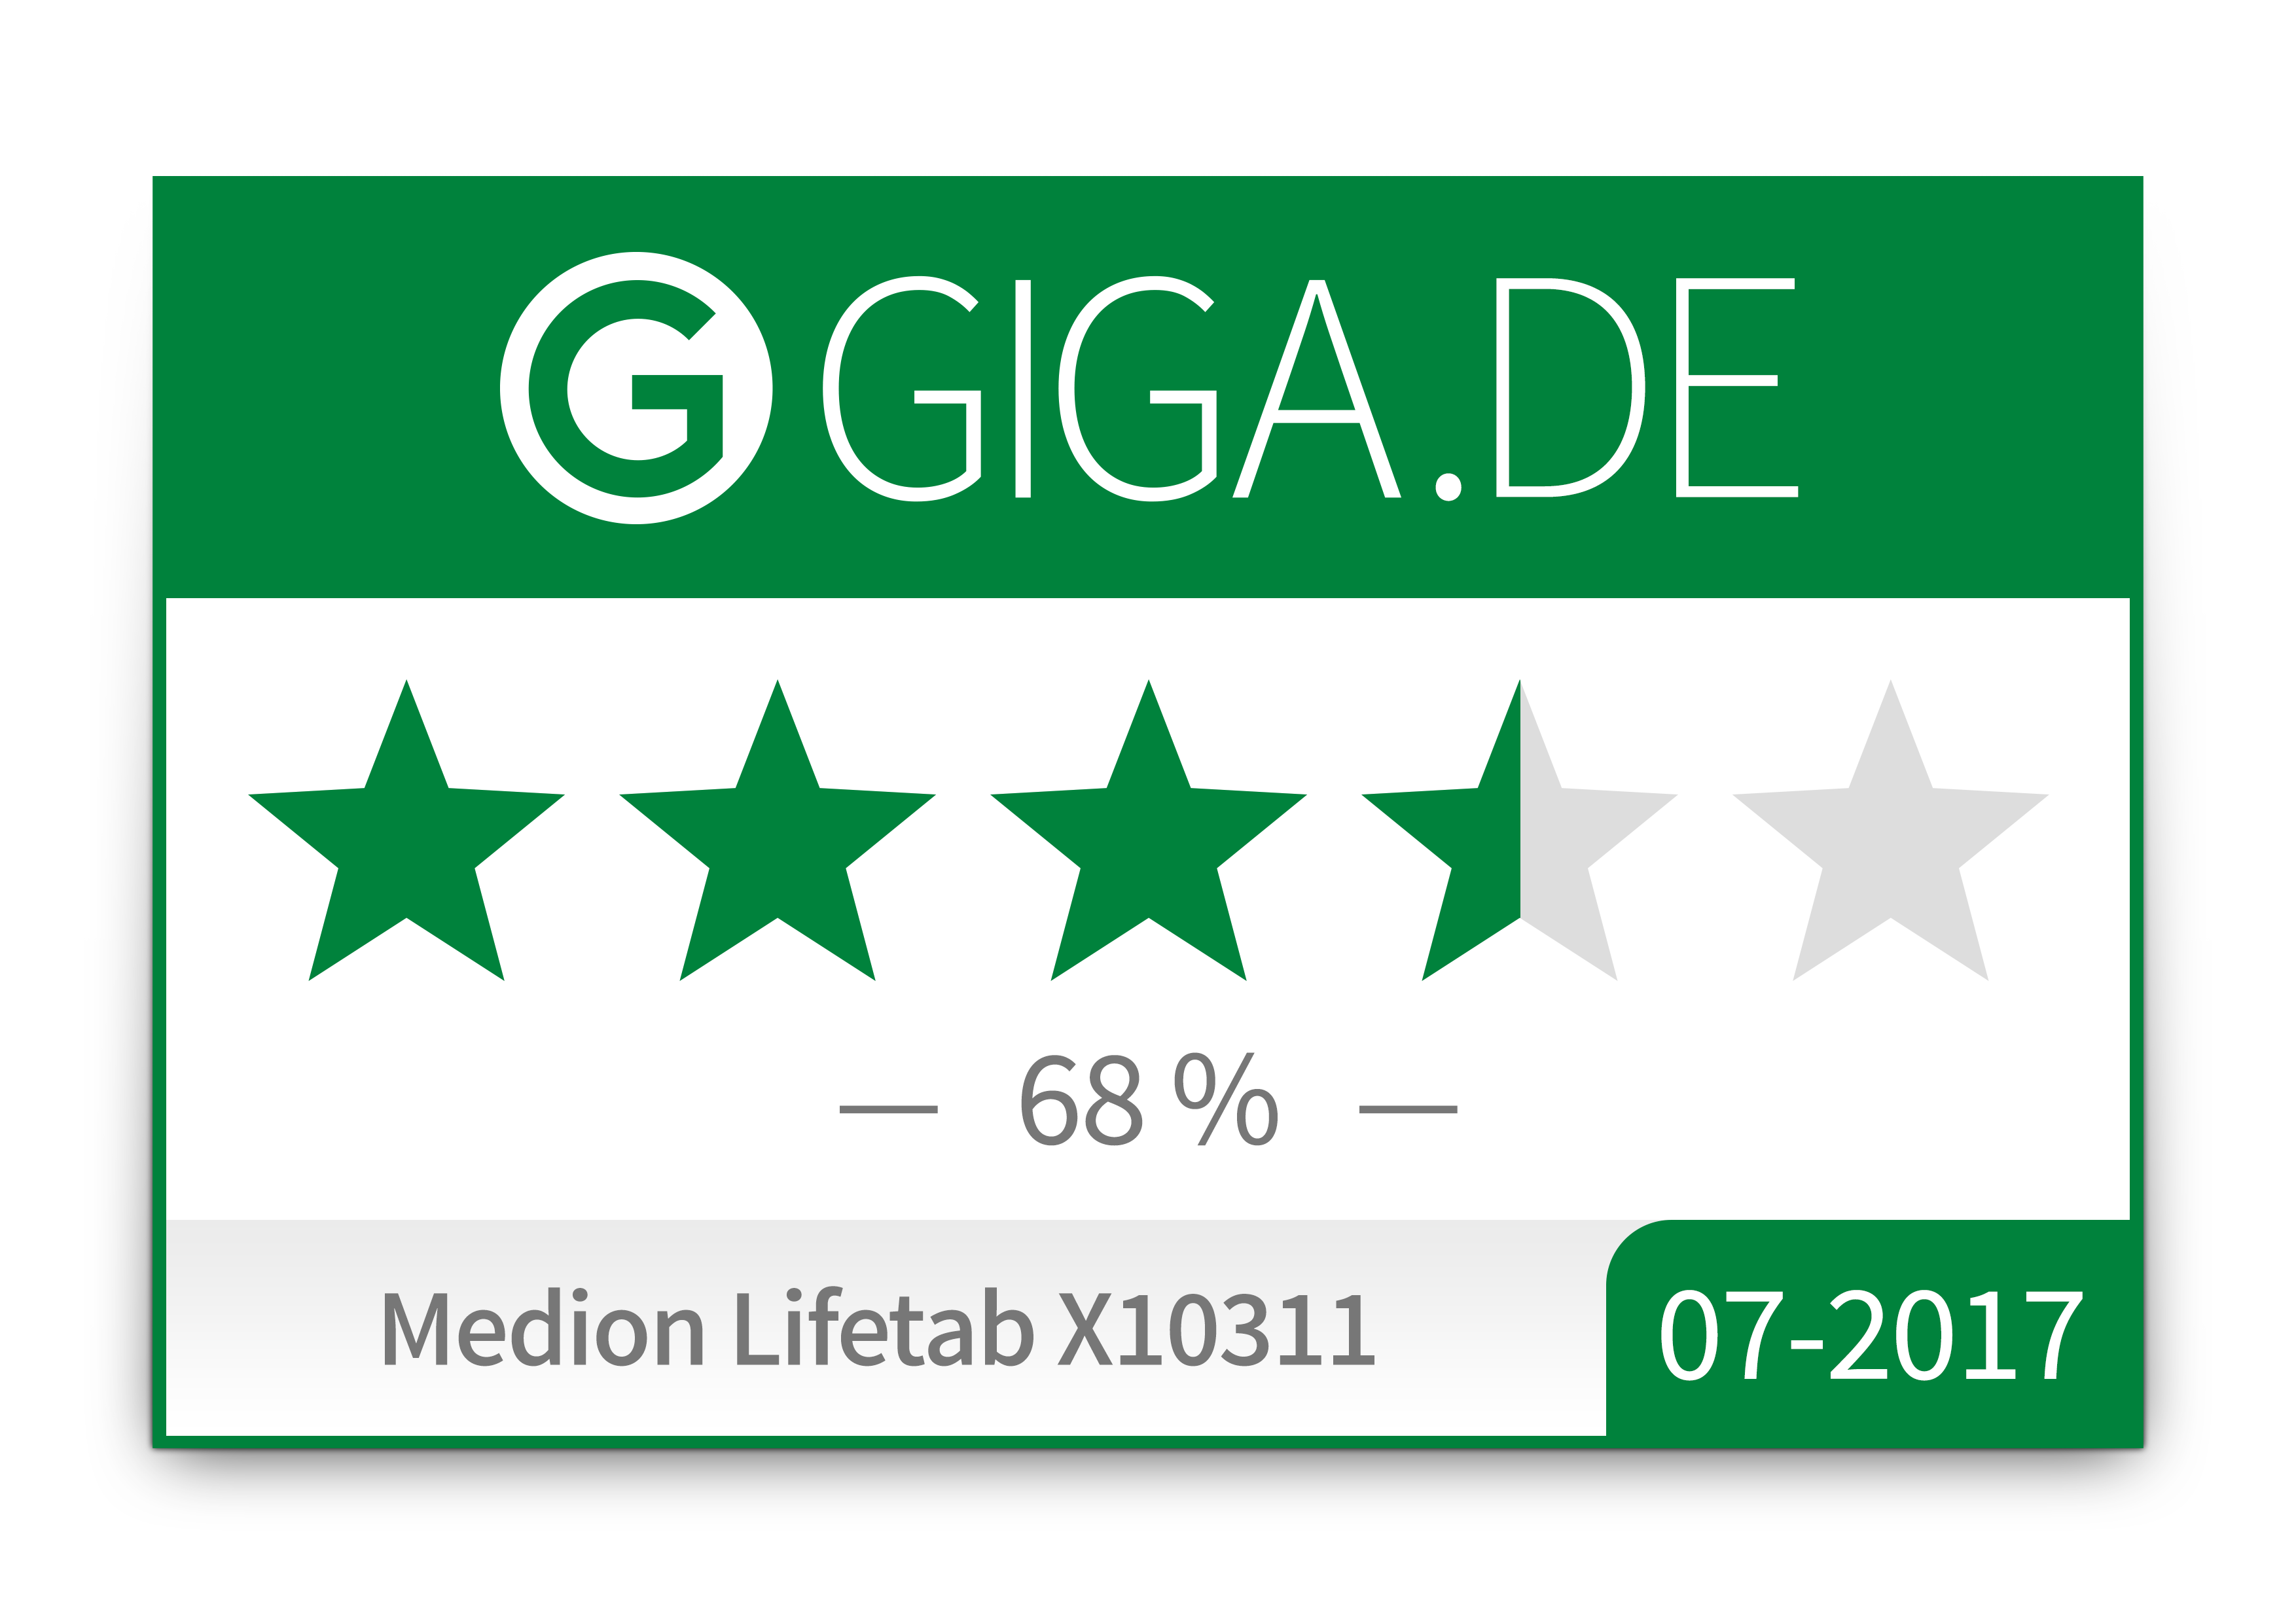 MEDIN LIFETAB X10311 - Giga "68%"